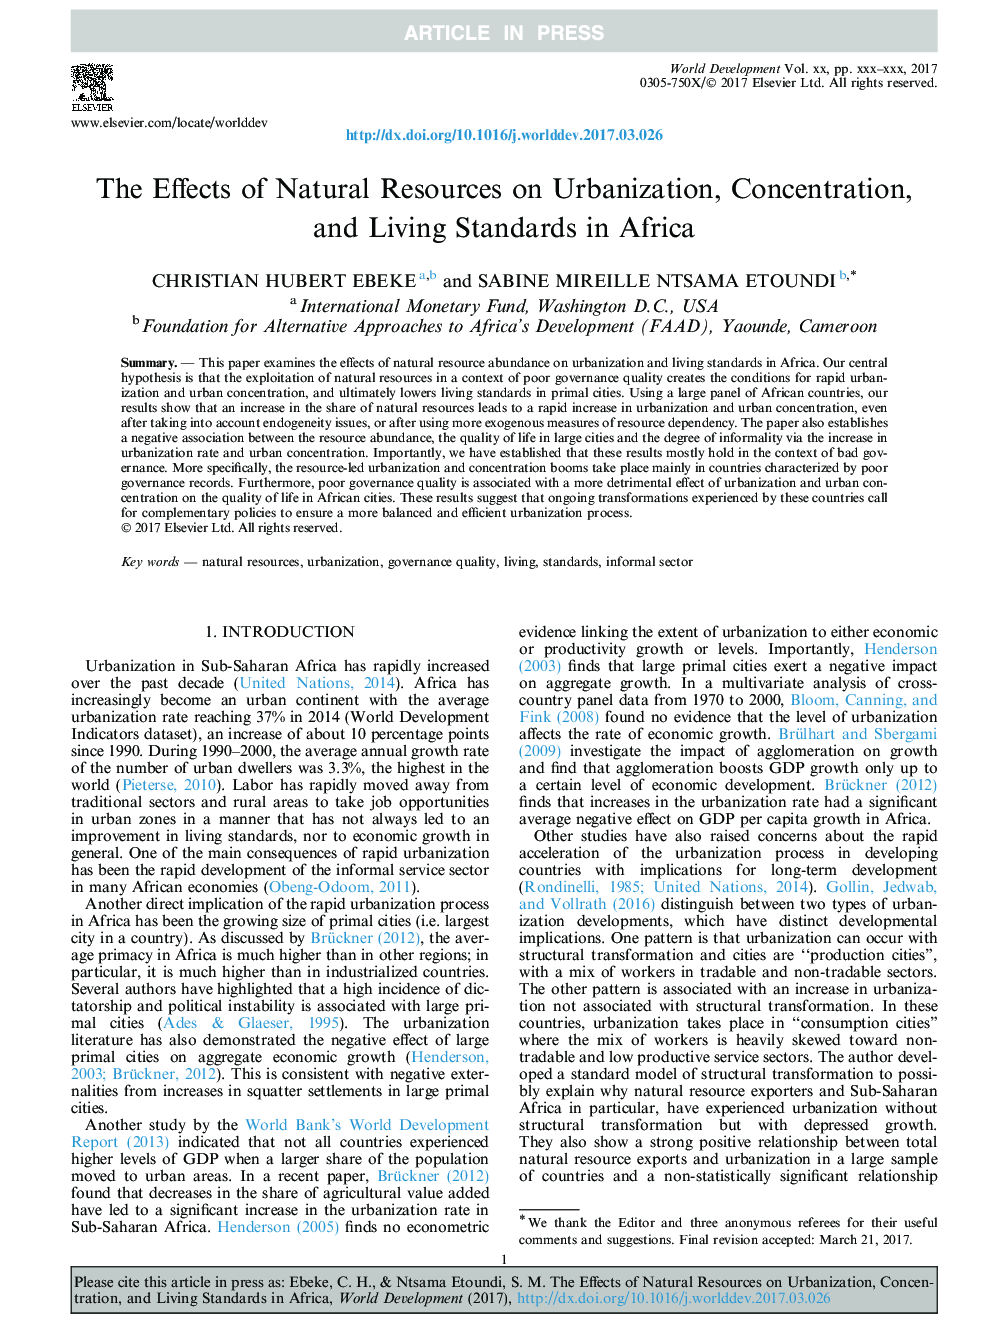 تأثیر منابع طبیعی بر شهرت، تمرکز و استانداردهای زندگی در آفریقا 